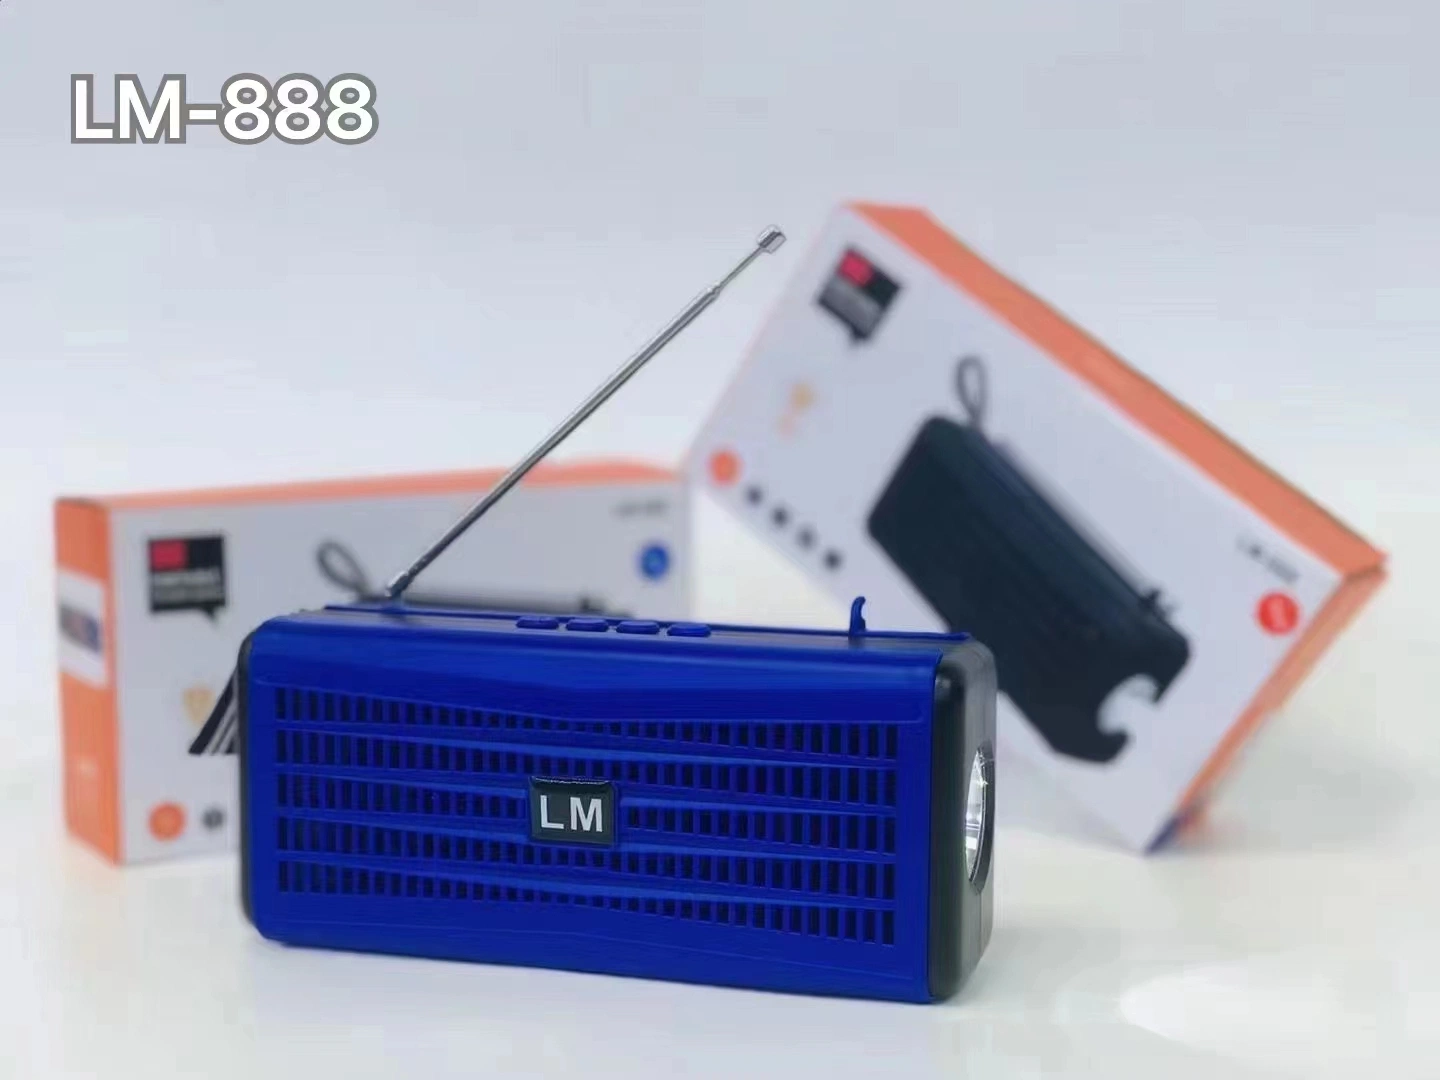 سماعة لاسلكية مع موديل Bluetooth خاص، مصباح وامض، بطاقة تجارية أجنبية محمولة، صوت نظام TWS Intercom